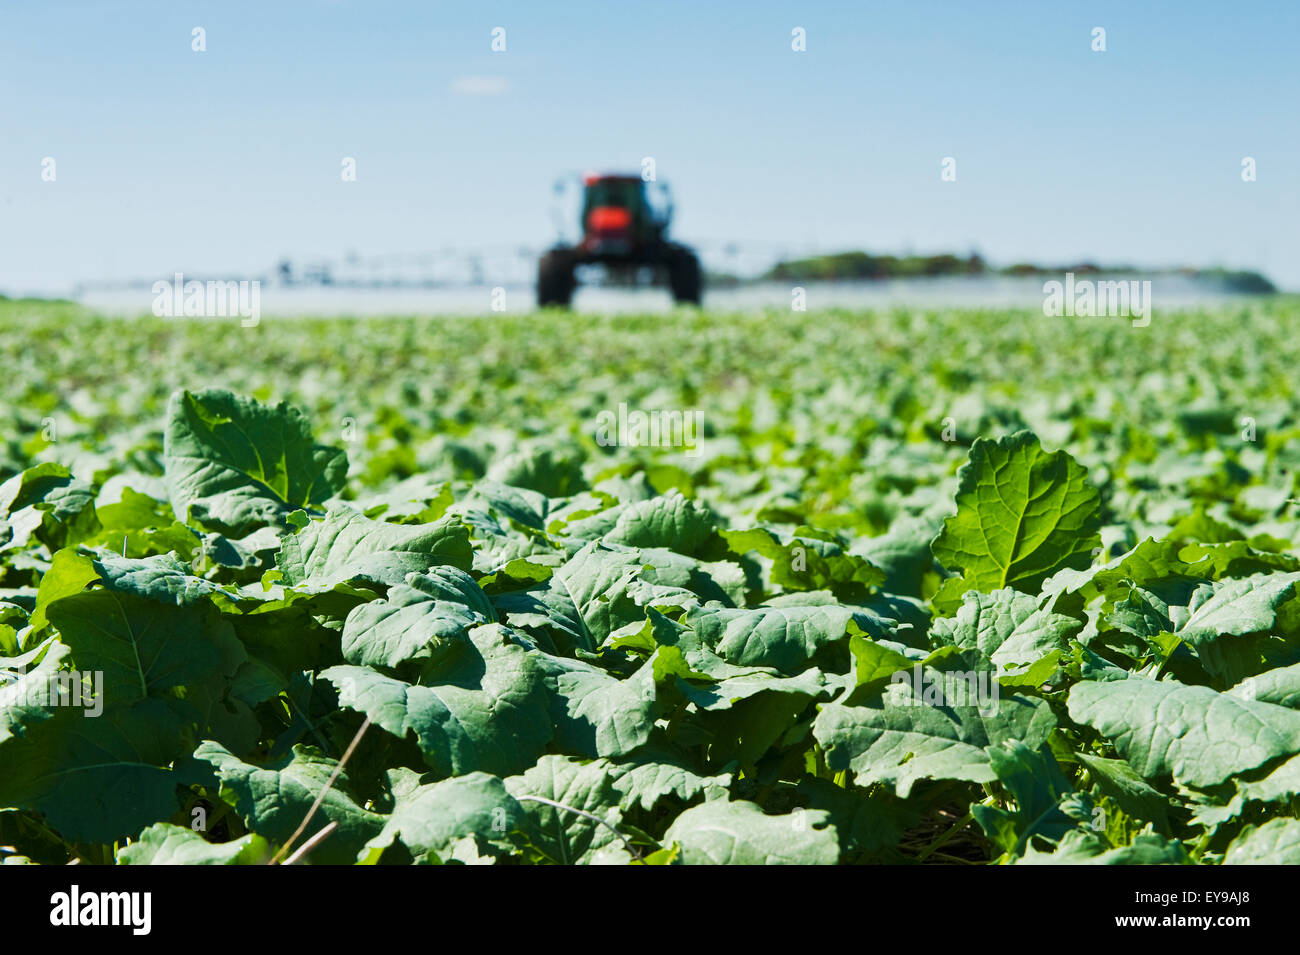 Eine hoher Bodenfreiheit Sprayer gilt Herbizid für frühen Wachstum Raps, in der Nähe von Dugald; Manitoba, Kanada Stockfoto